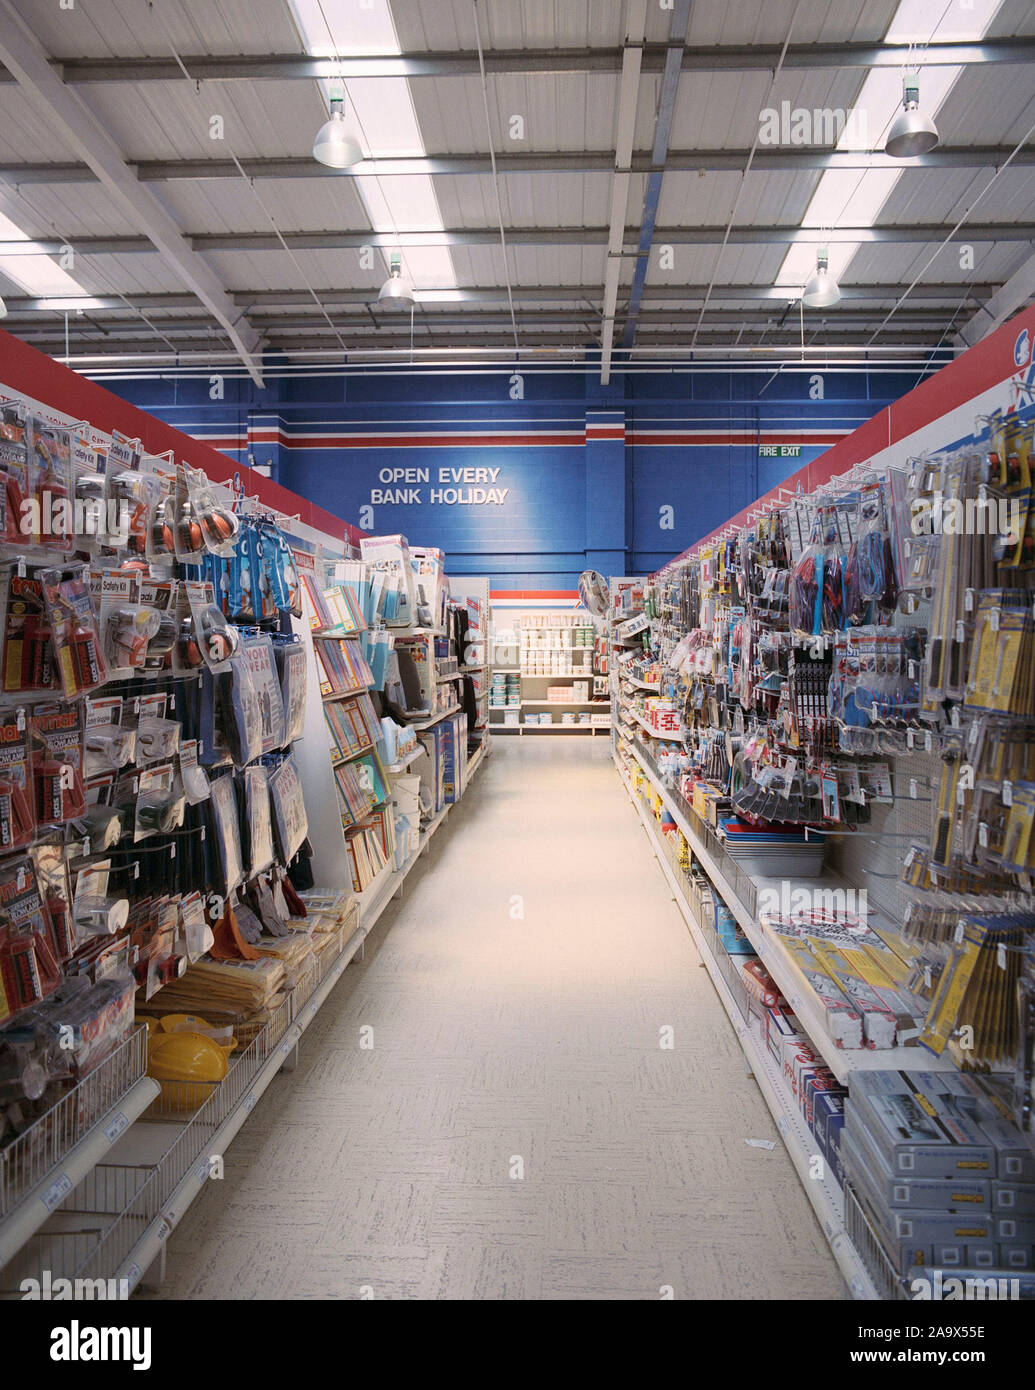 Texas 1990 magasin de bricolage, retail park Farnham Surrey, Angleterre du Sud-Est Banque D'Images